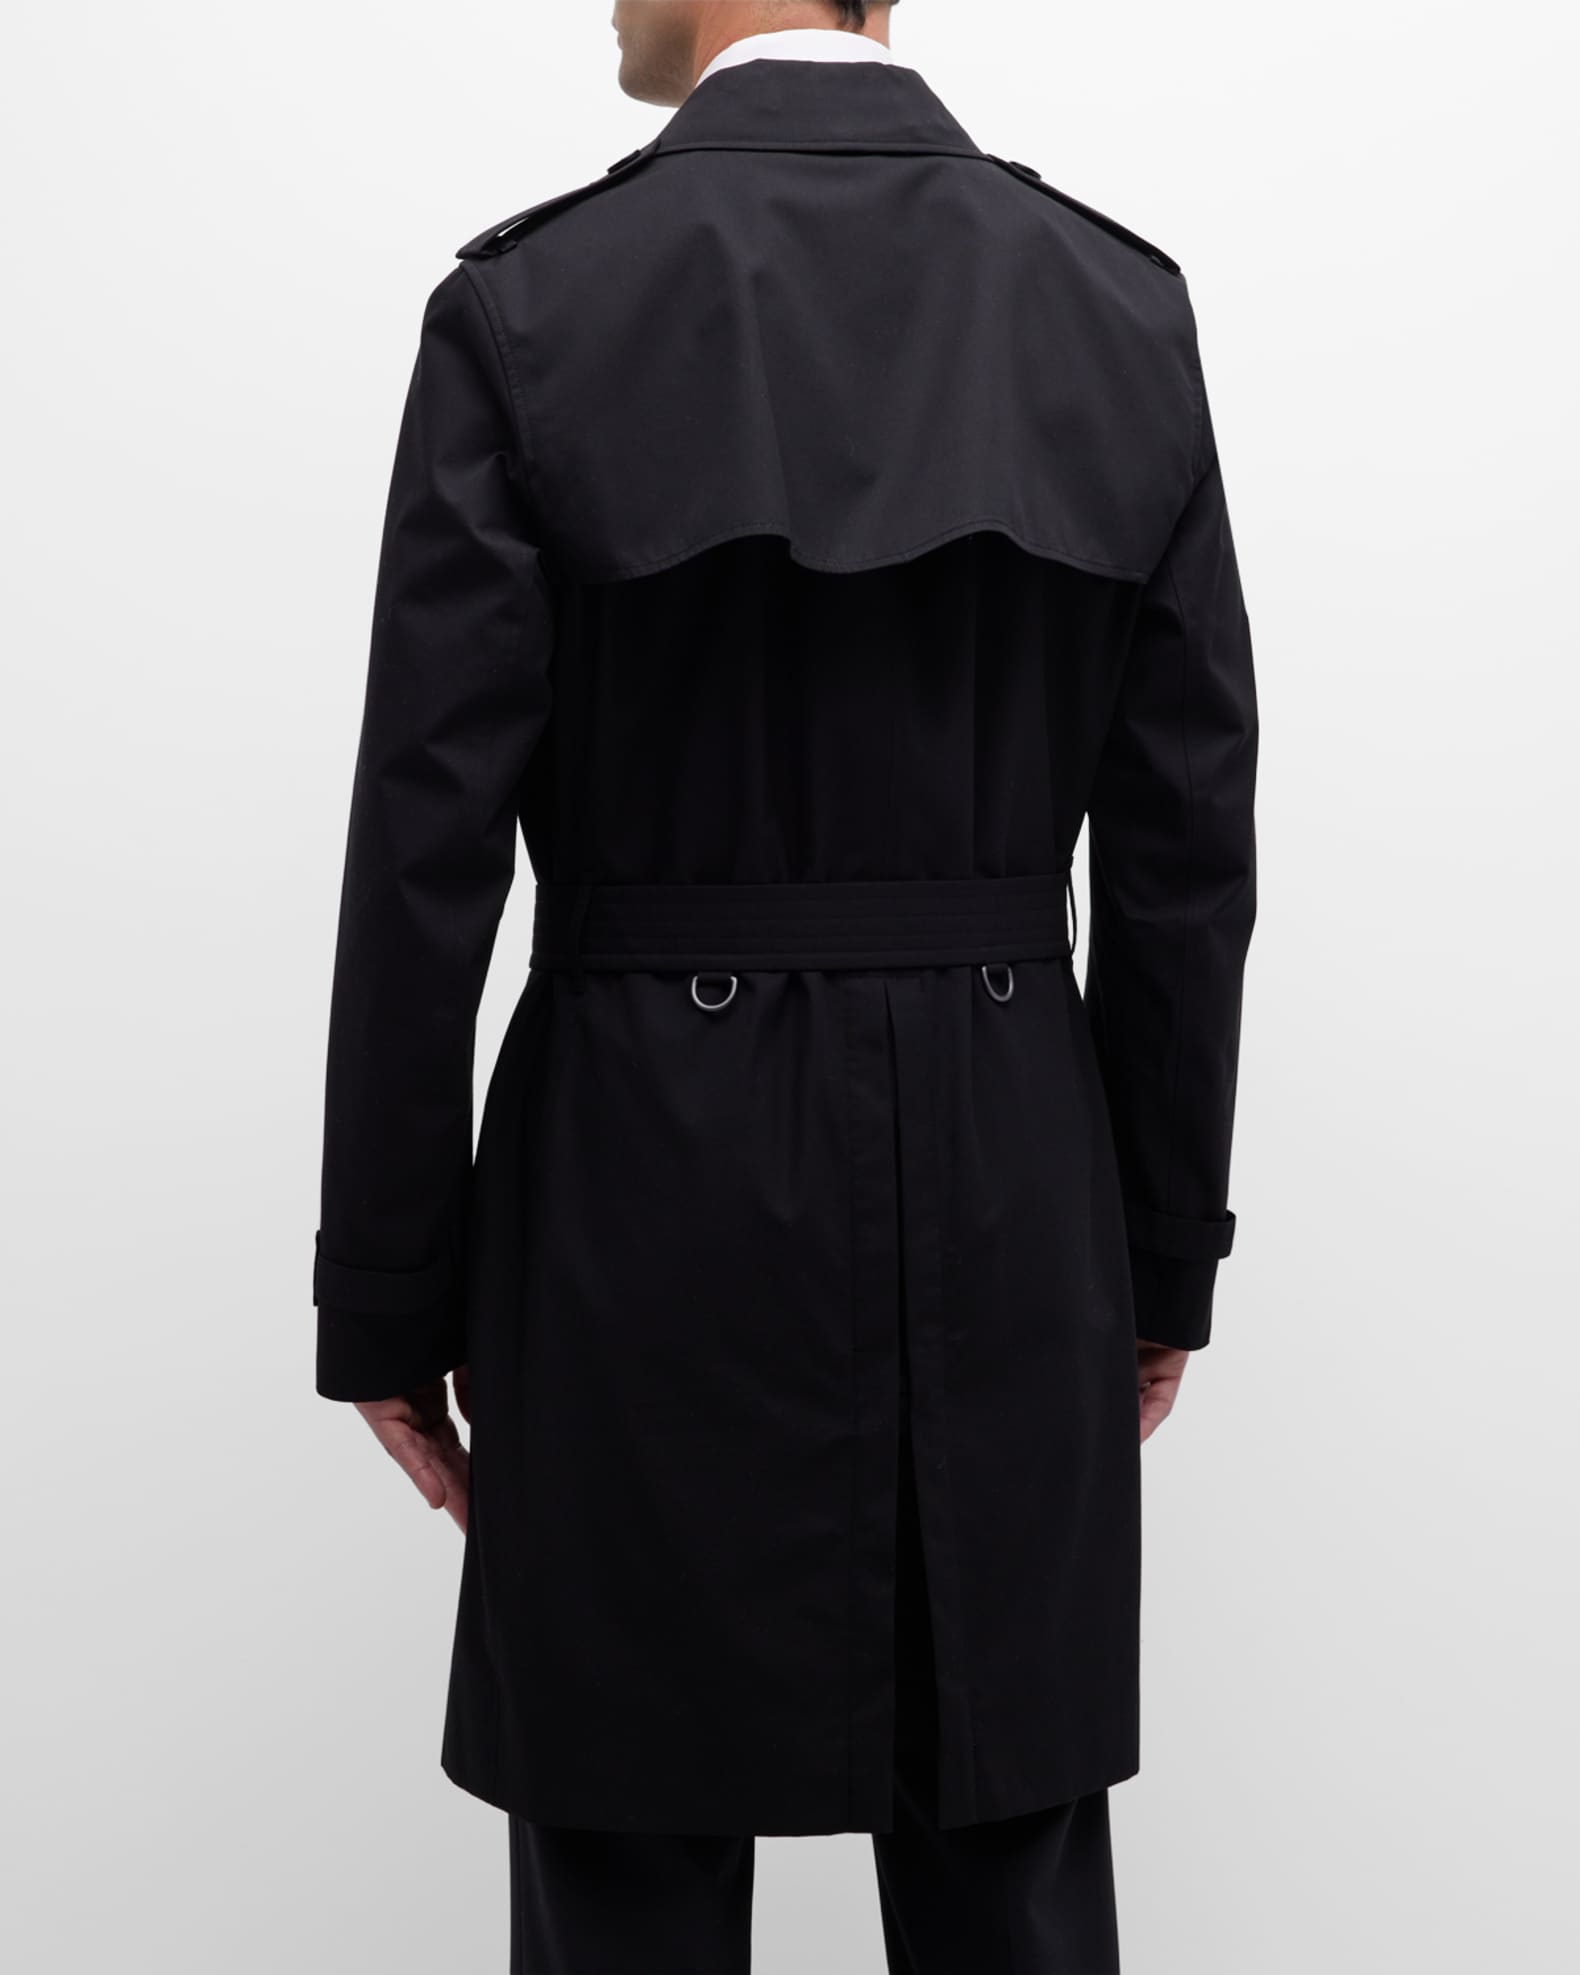 Burberry Men's Kensington Gabardine Trench Coat | Neiman Marcus